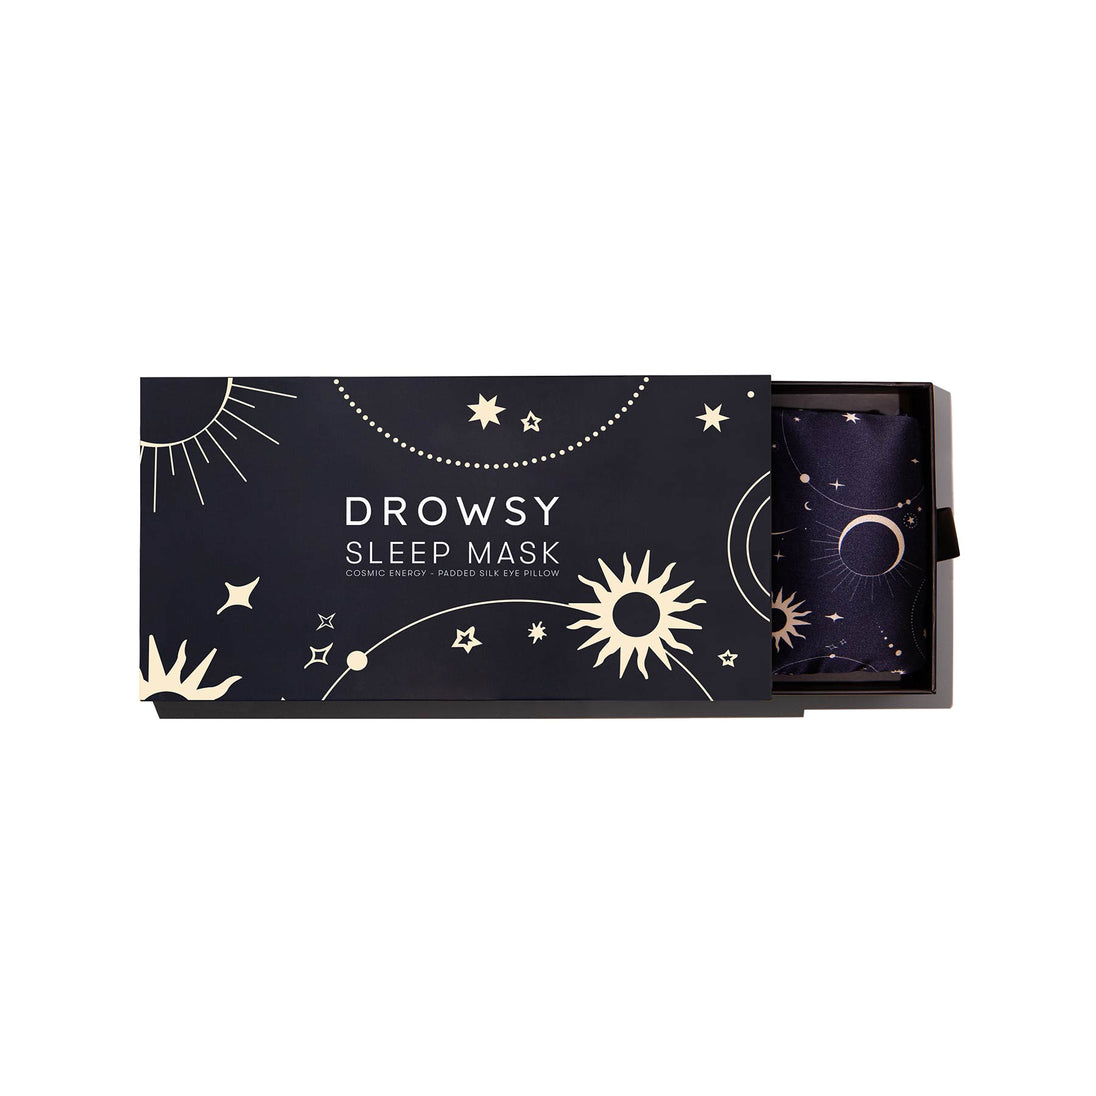 Drowsy Sleep Co. Cosmic Energy sleep mask Box on white background